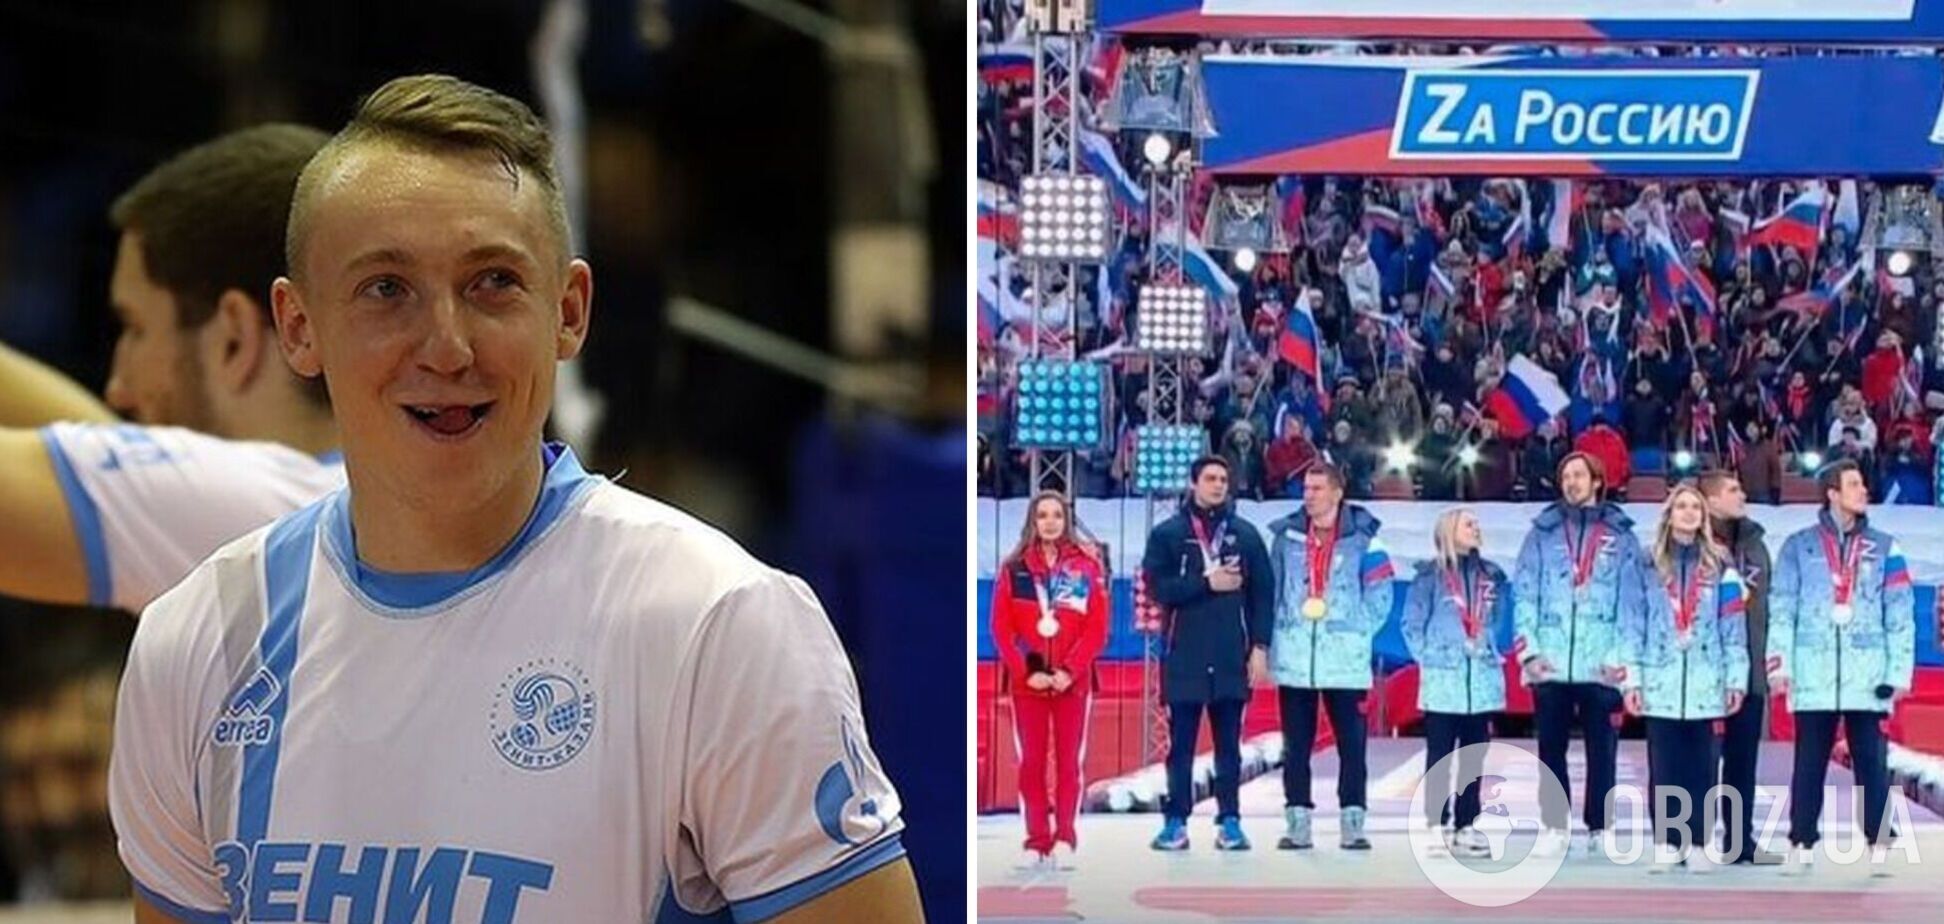 'Этой нации не существует': российский чемпион Европы накинулся на поляков